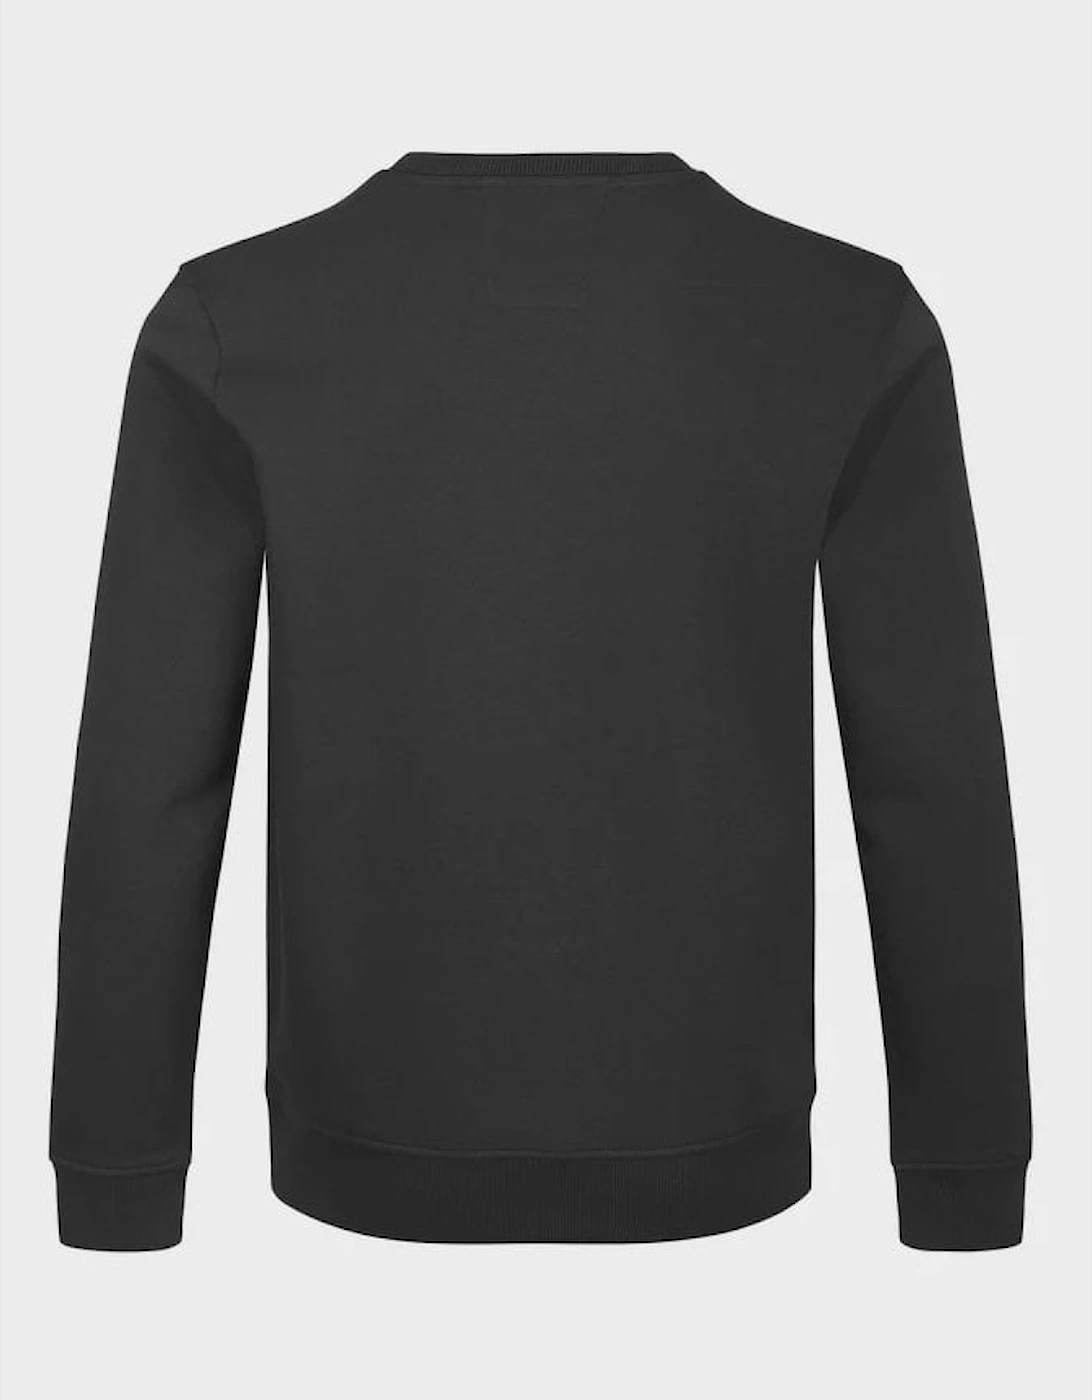 LUKE1977 London Sweatshirt - Jet Black